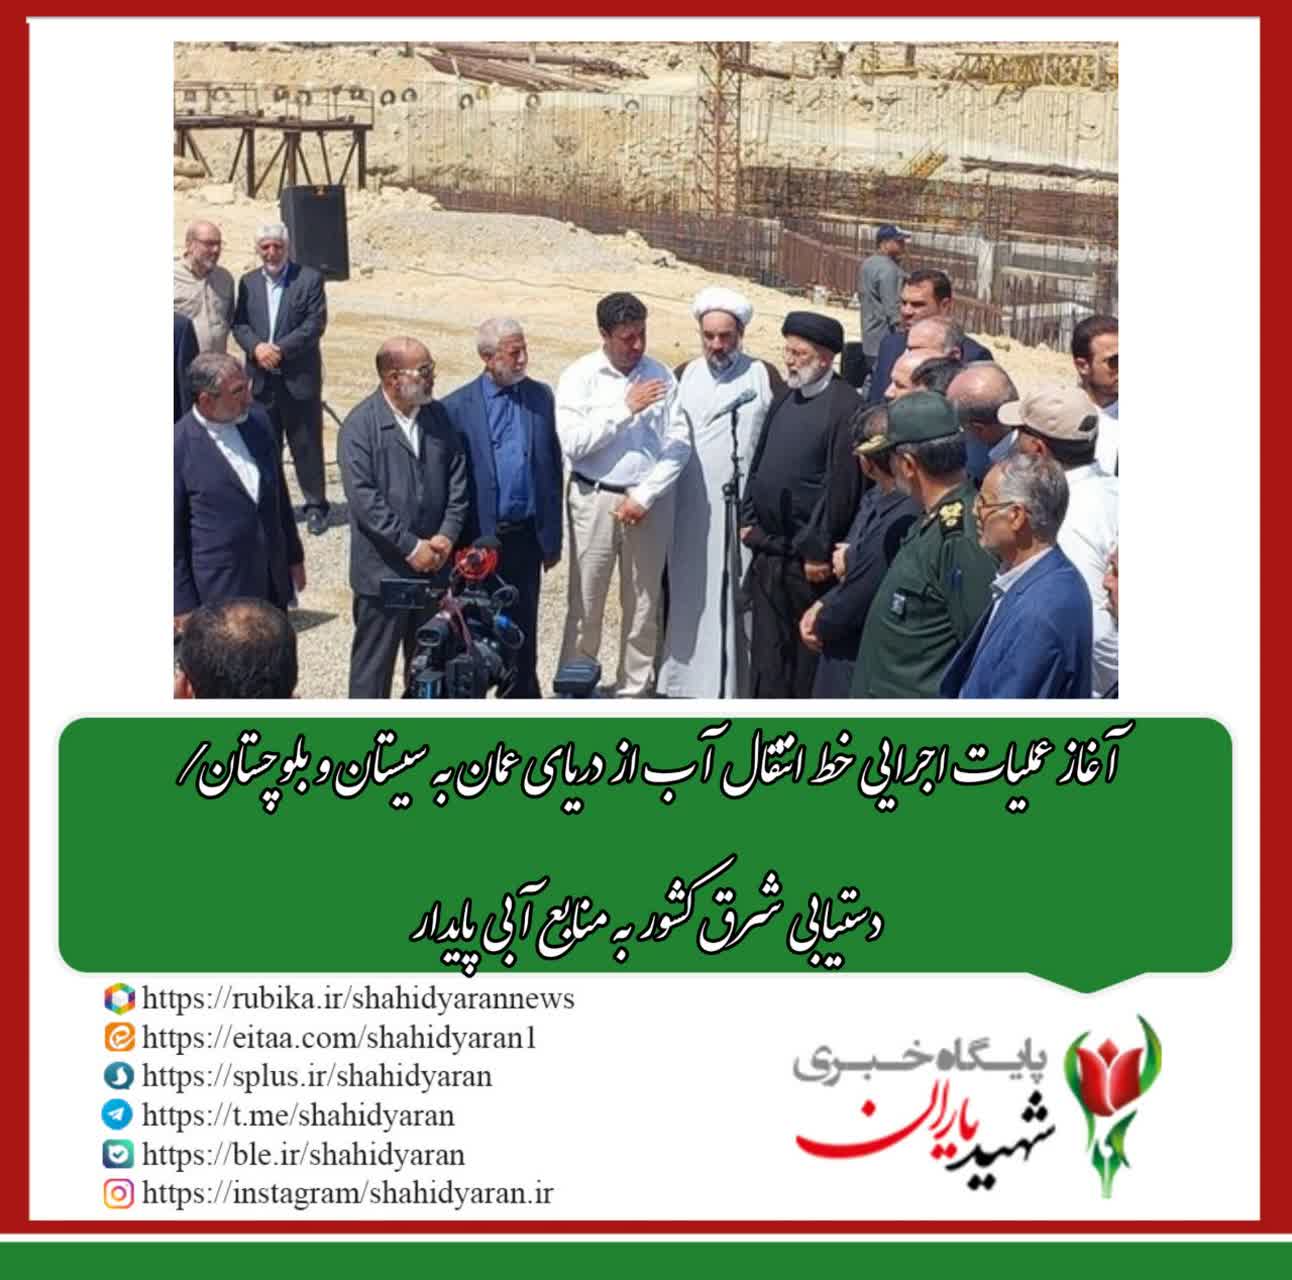 آغاز عملیات اجرایی خط انتقال آب از دریای عمان به سیستان و بلوچستان/ دستیابی شرق کشور به منابع آبی پایدار